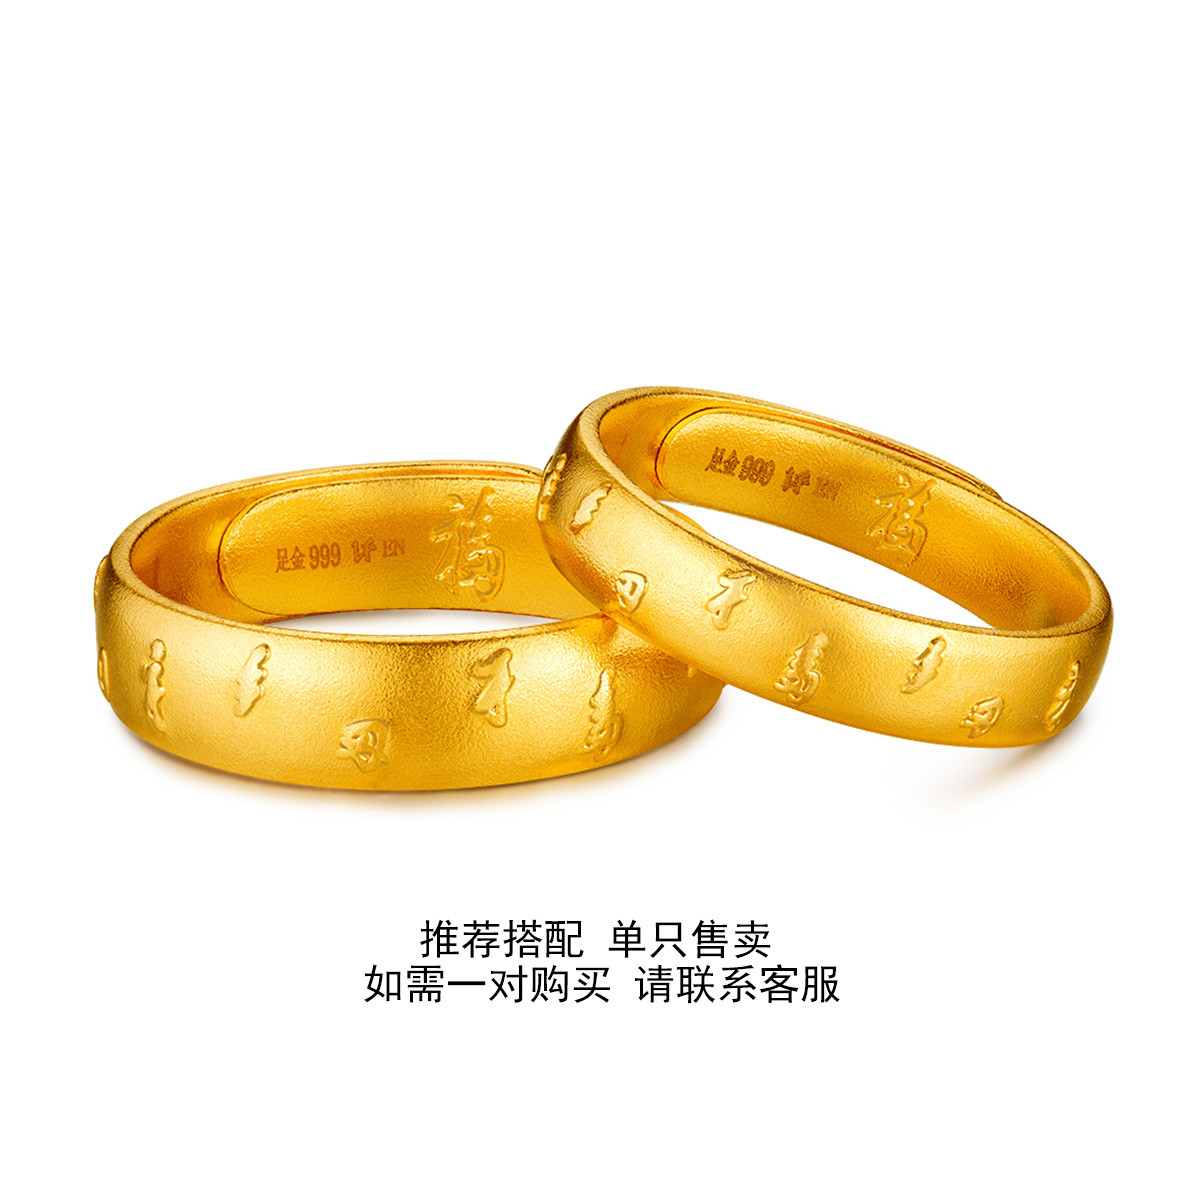 六福珠宝福满传家系列黄金对戒男士足金戒指情侣款计价000337M1